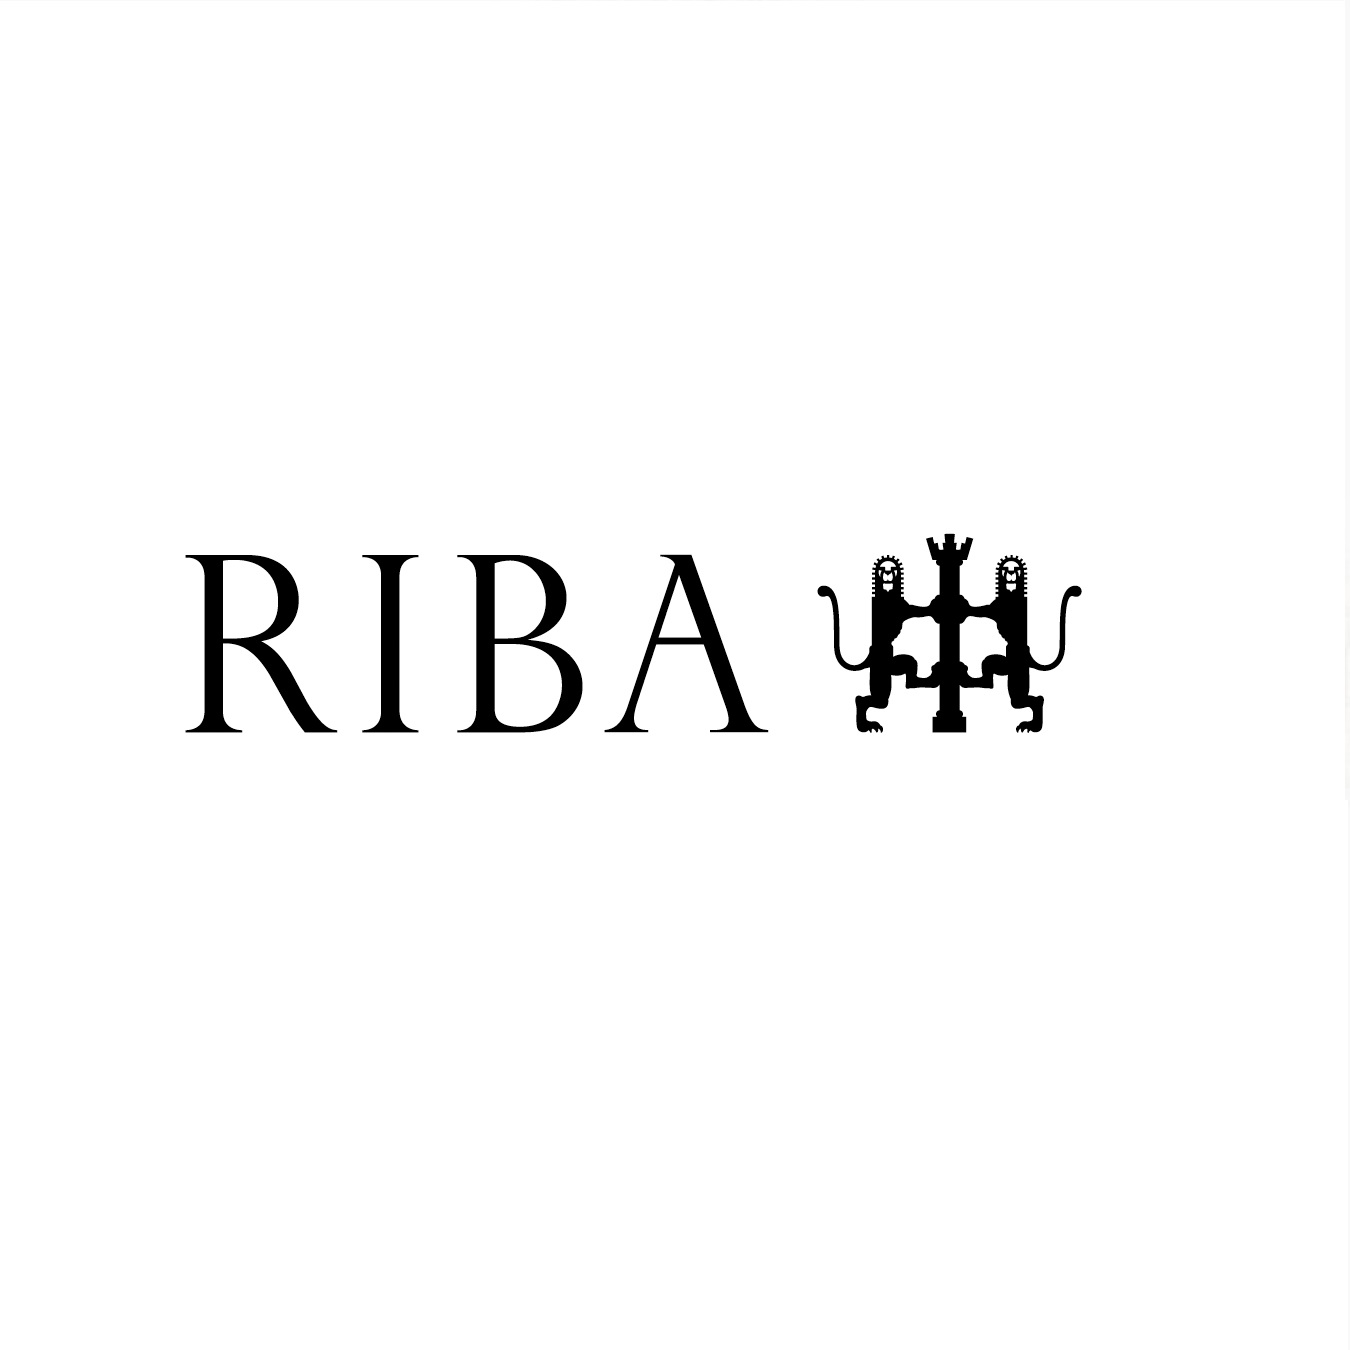 Royal Institute of British Architects (RIBA), UK.